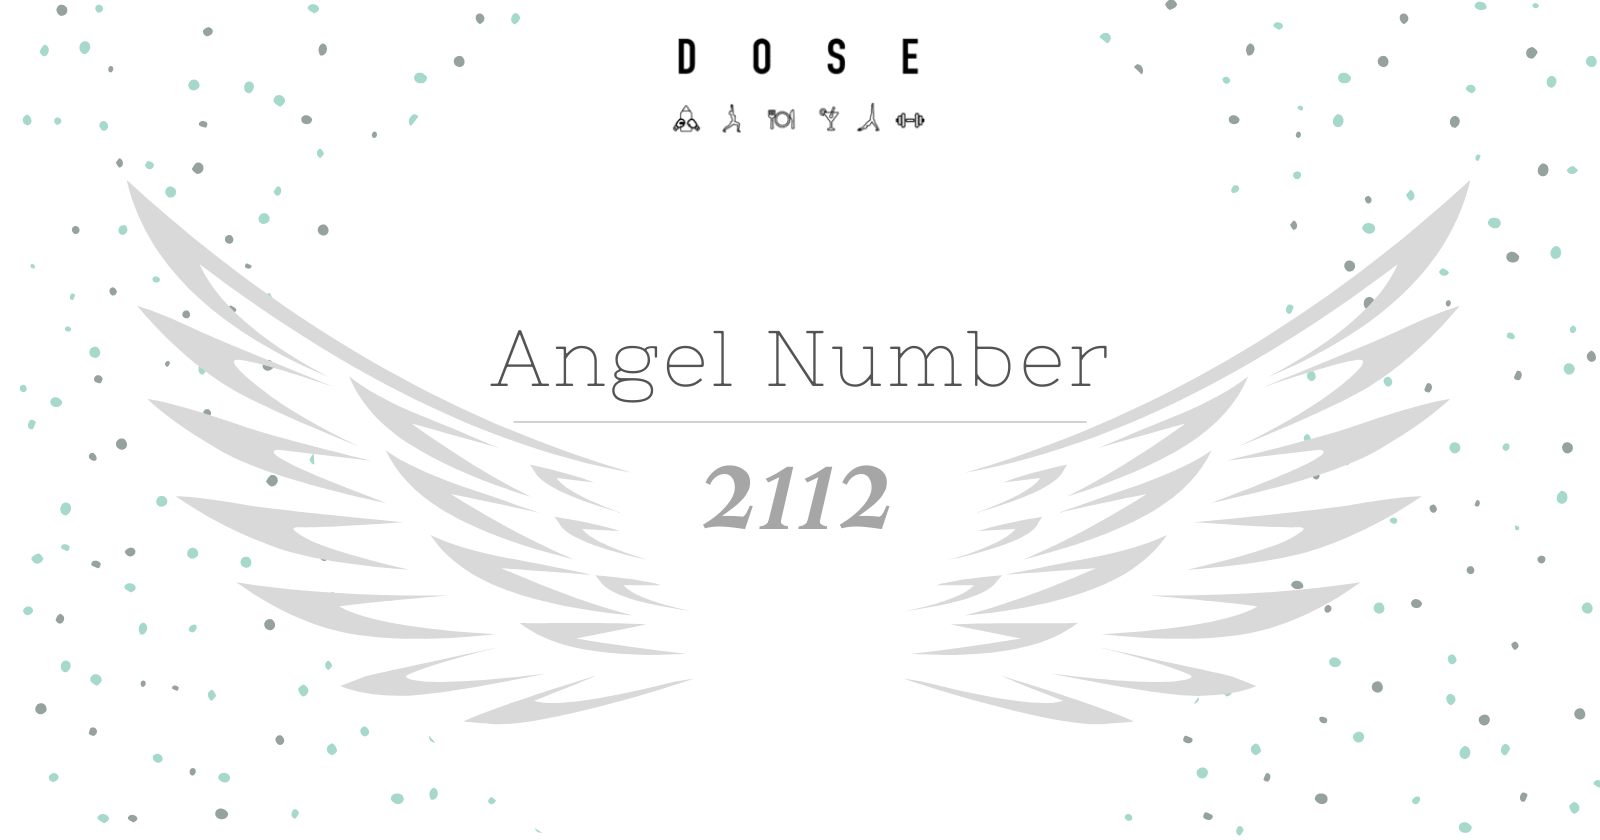 Angel Number 2112